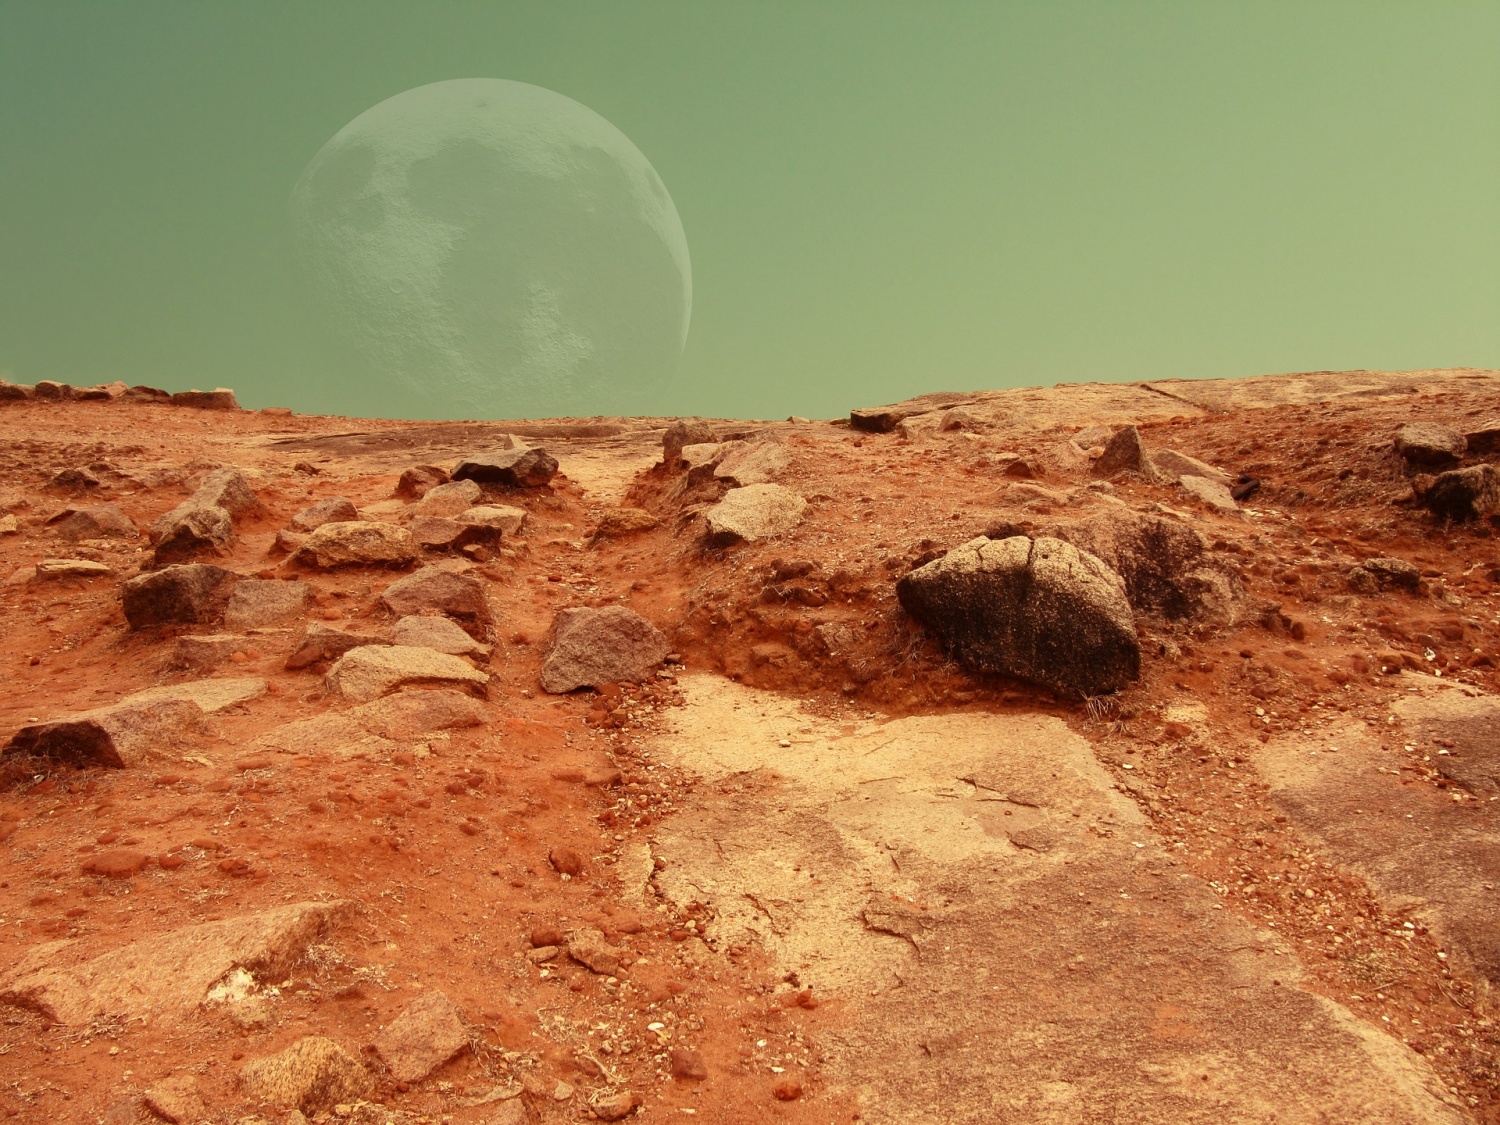 Метеорит позволил ученым предположить, что 4 млрд лет назад Марс был «живой» планетой